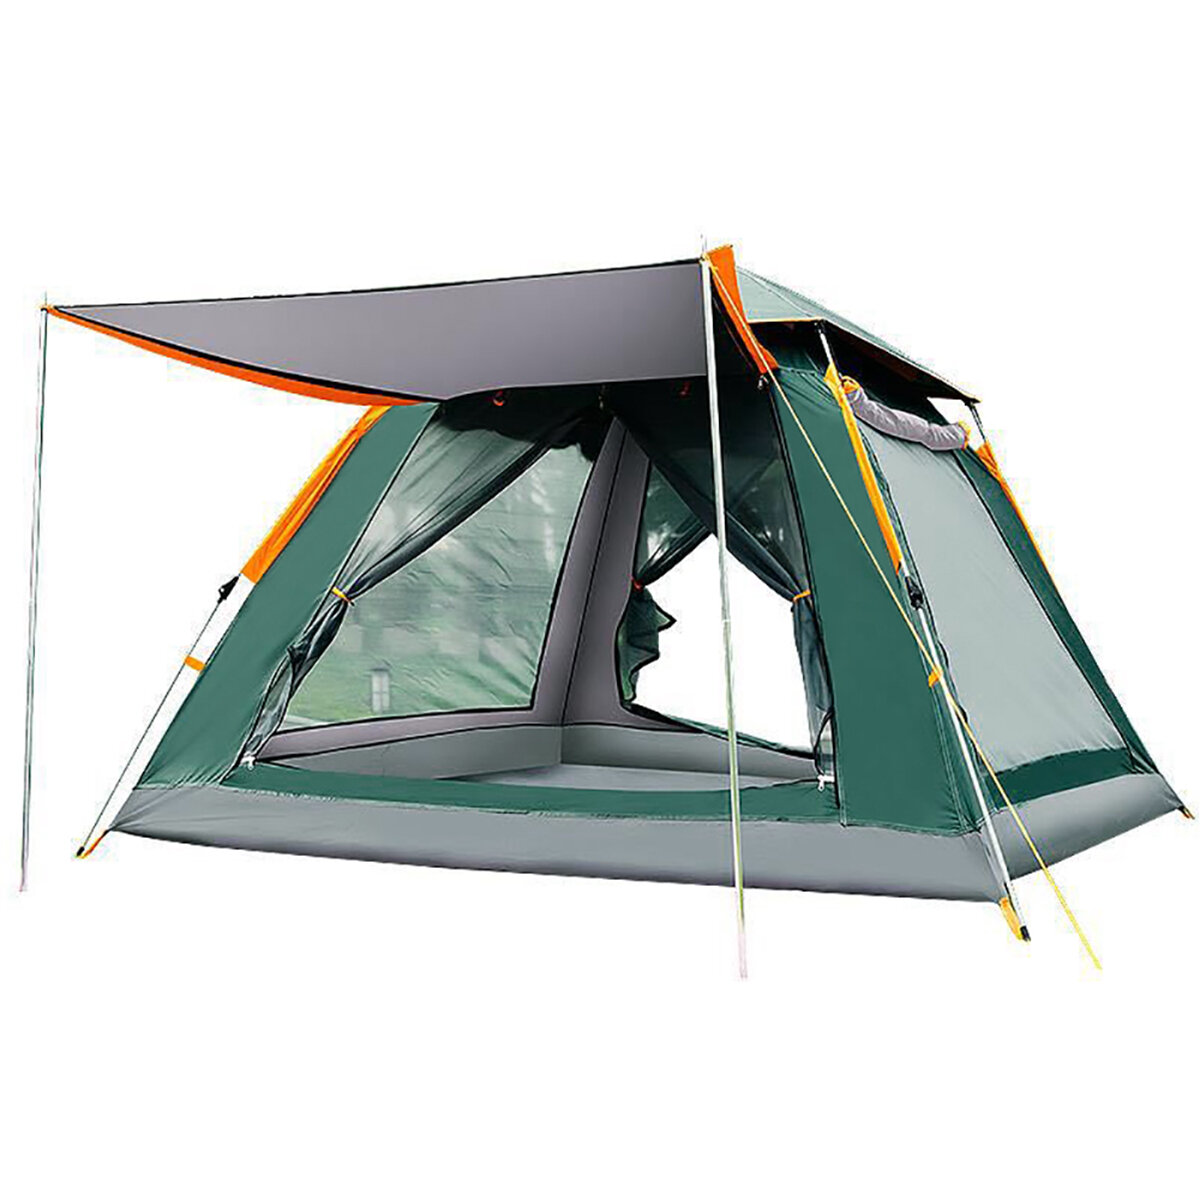 3-4 persone/5-8 persone apertura automatica della velocità campeggio tenda 210 t tessuto Oxford protezione solare tenda impermeabile tenda parasole tenda aperta per escursionismo arrampicata